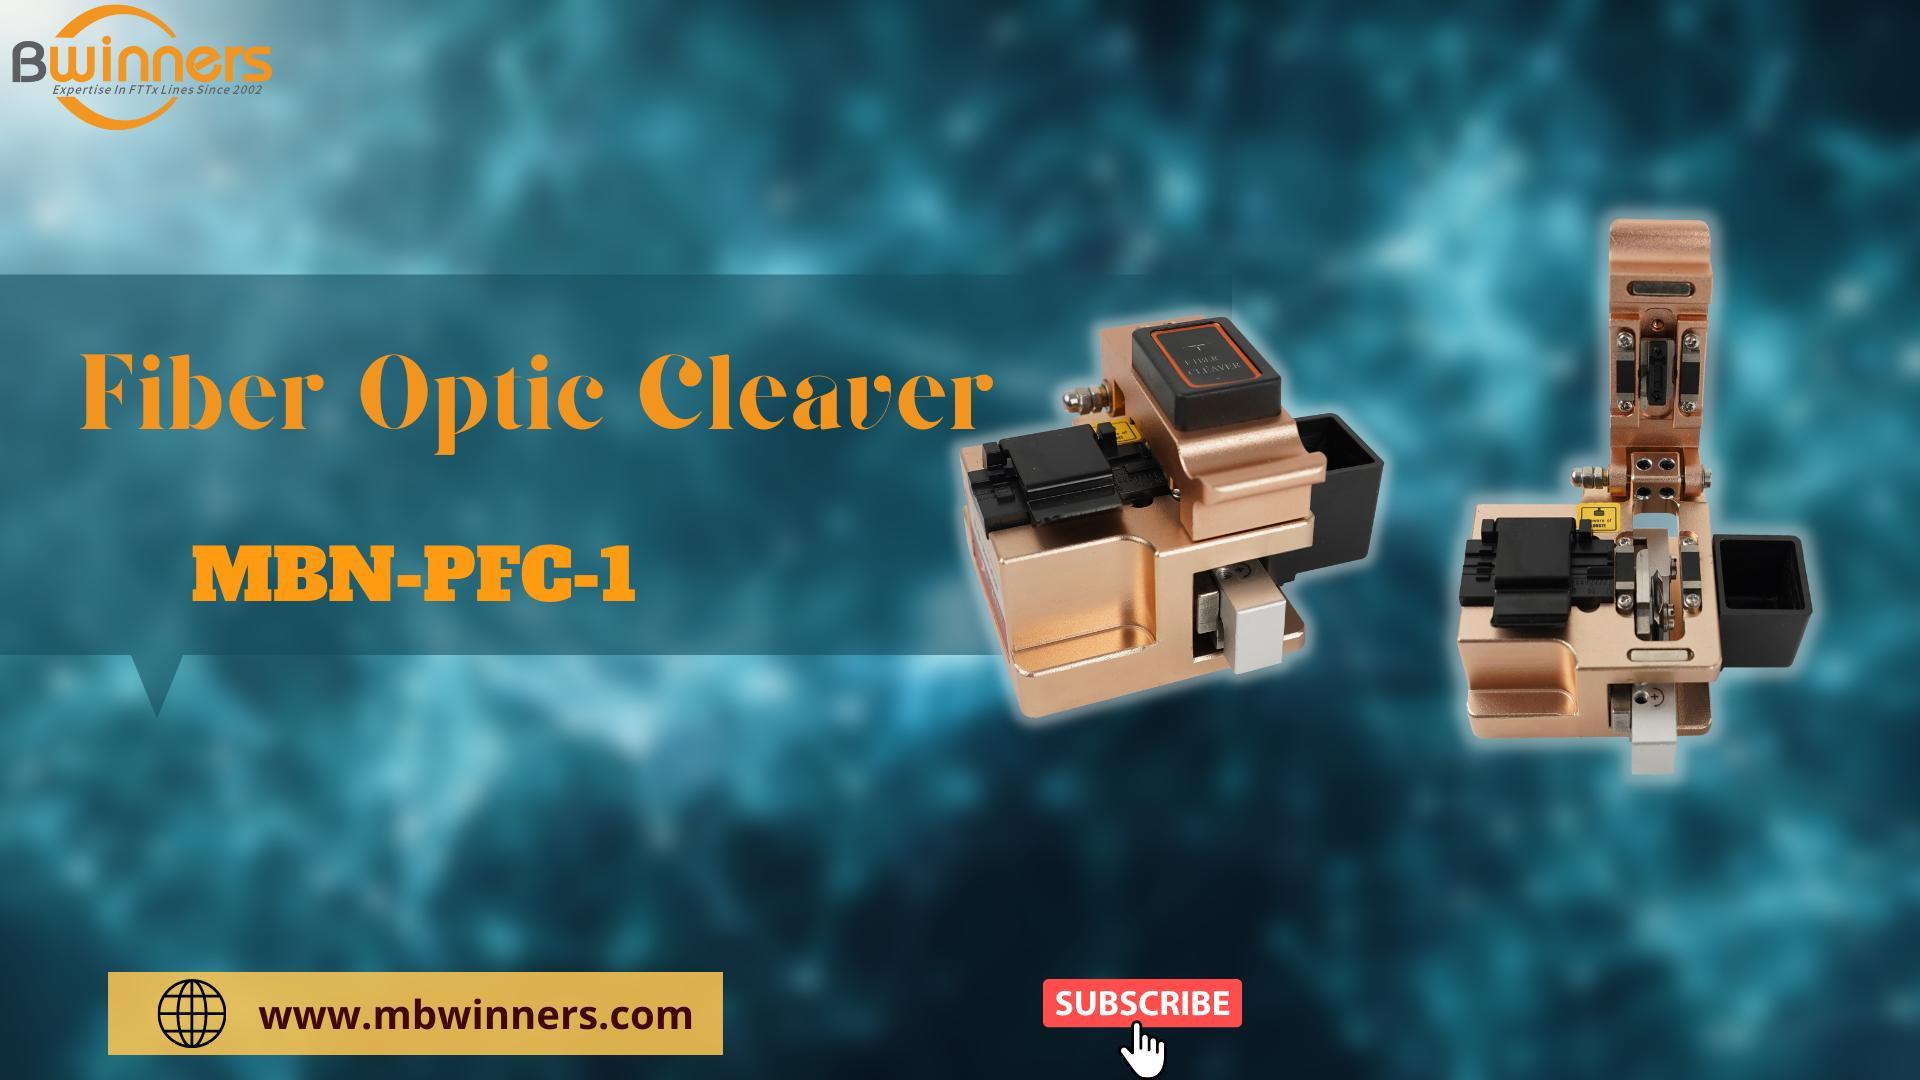 MBN-PFC-1 Fiber Optic Cleaver